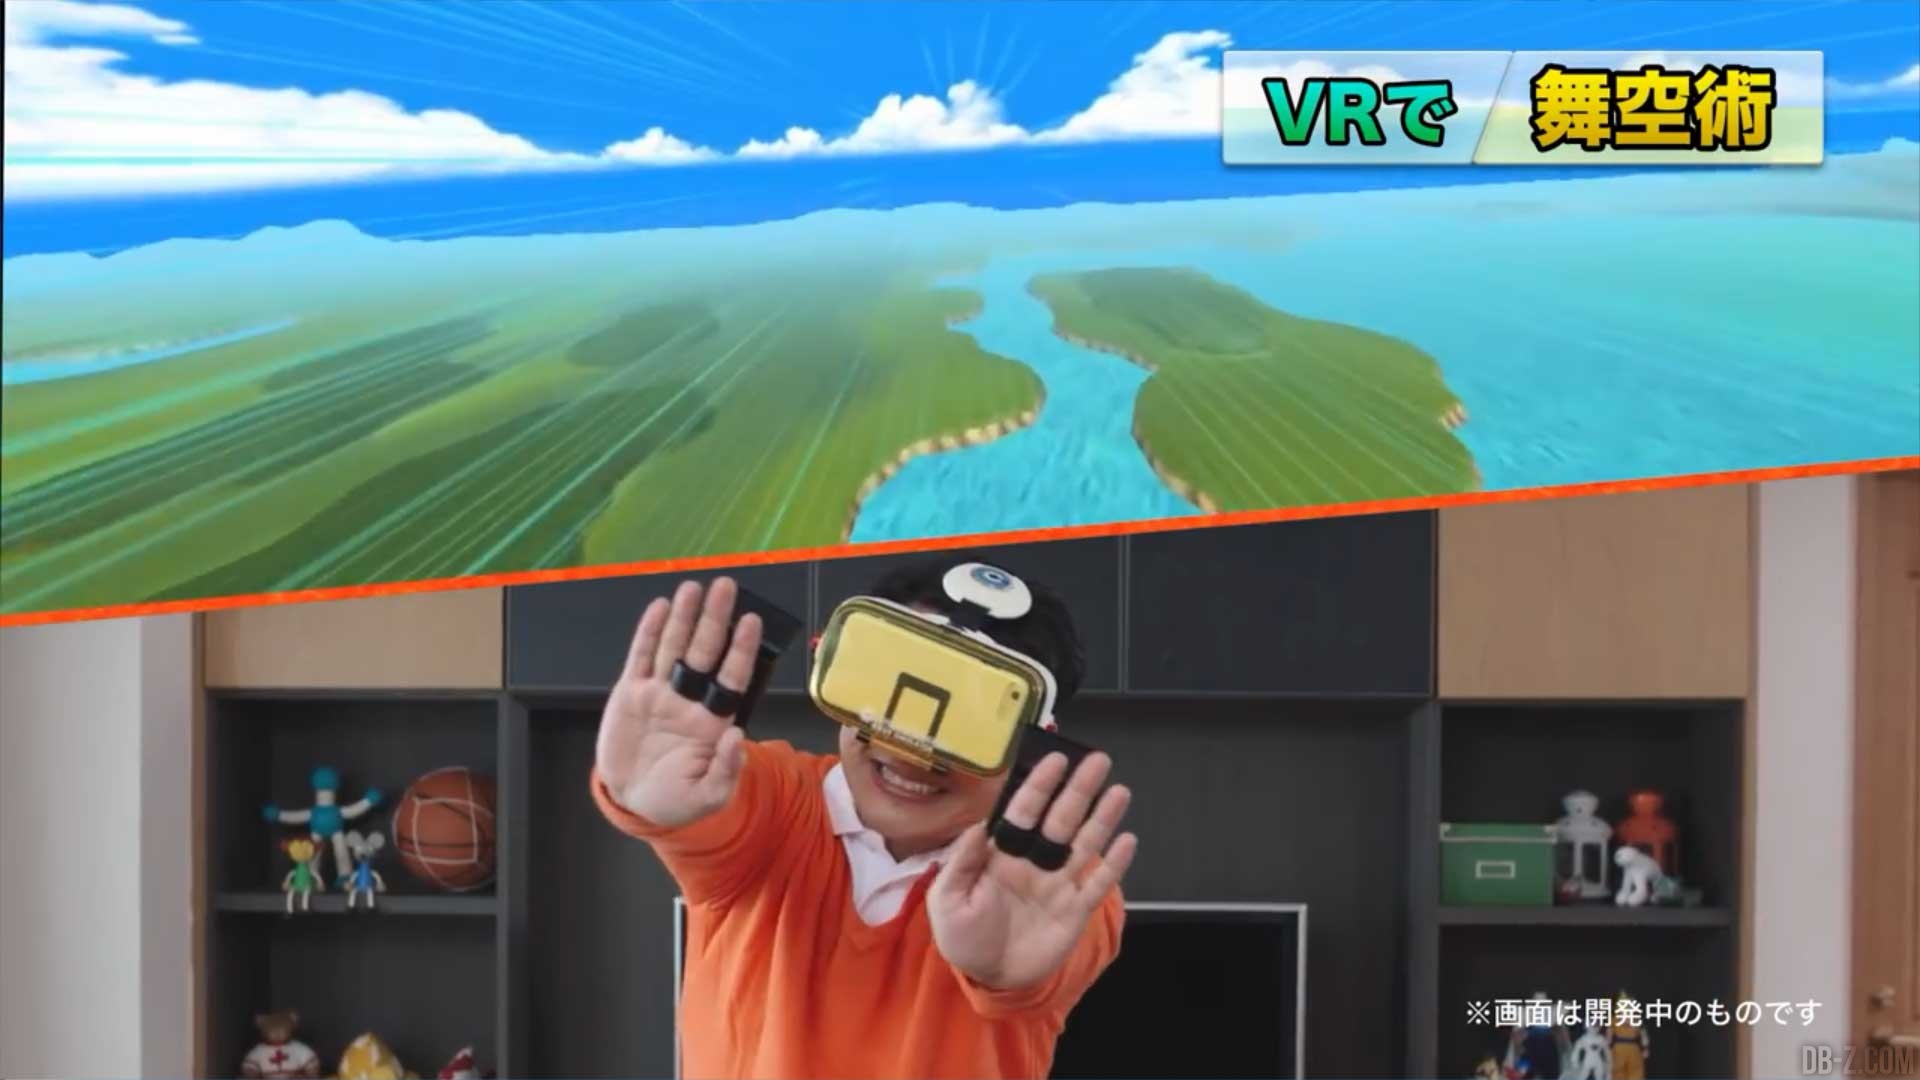 DRAGON BALL Z en VR : La publicité du BotsNew VR